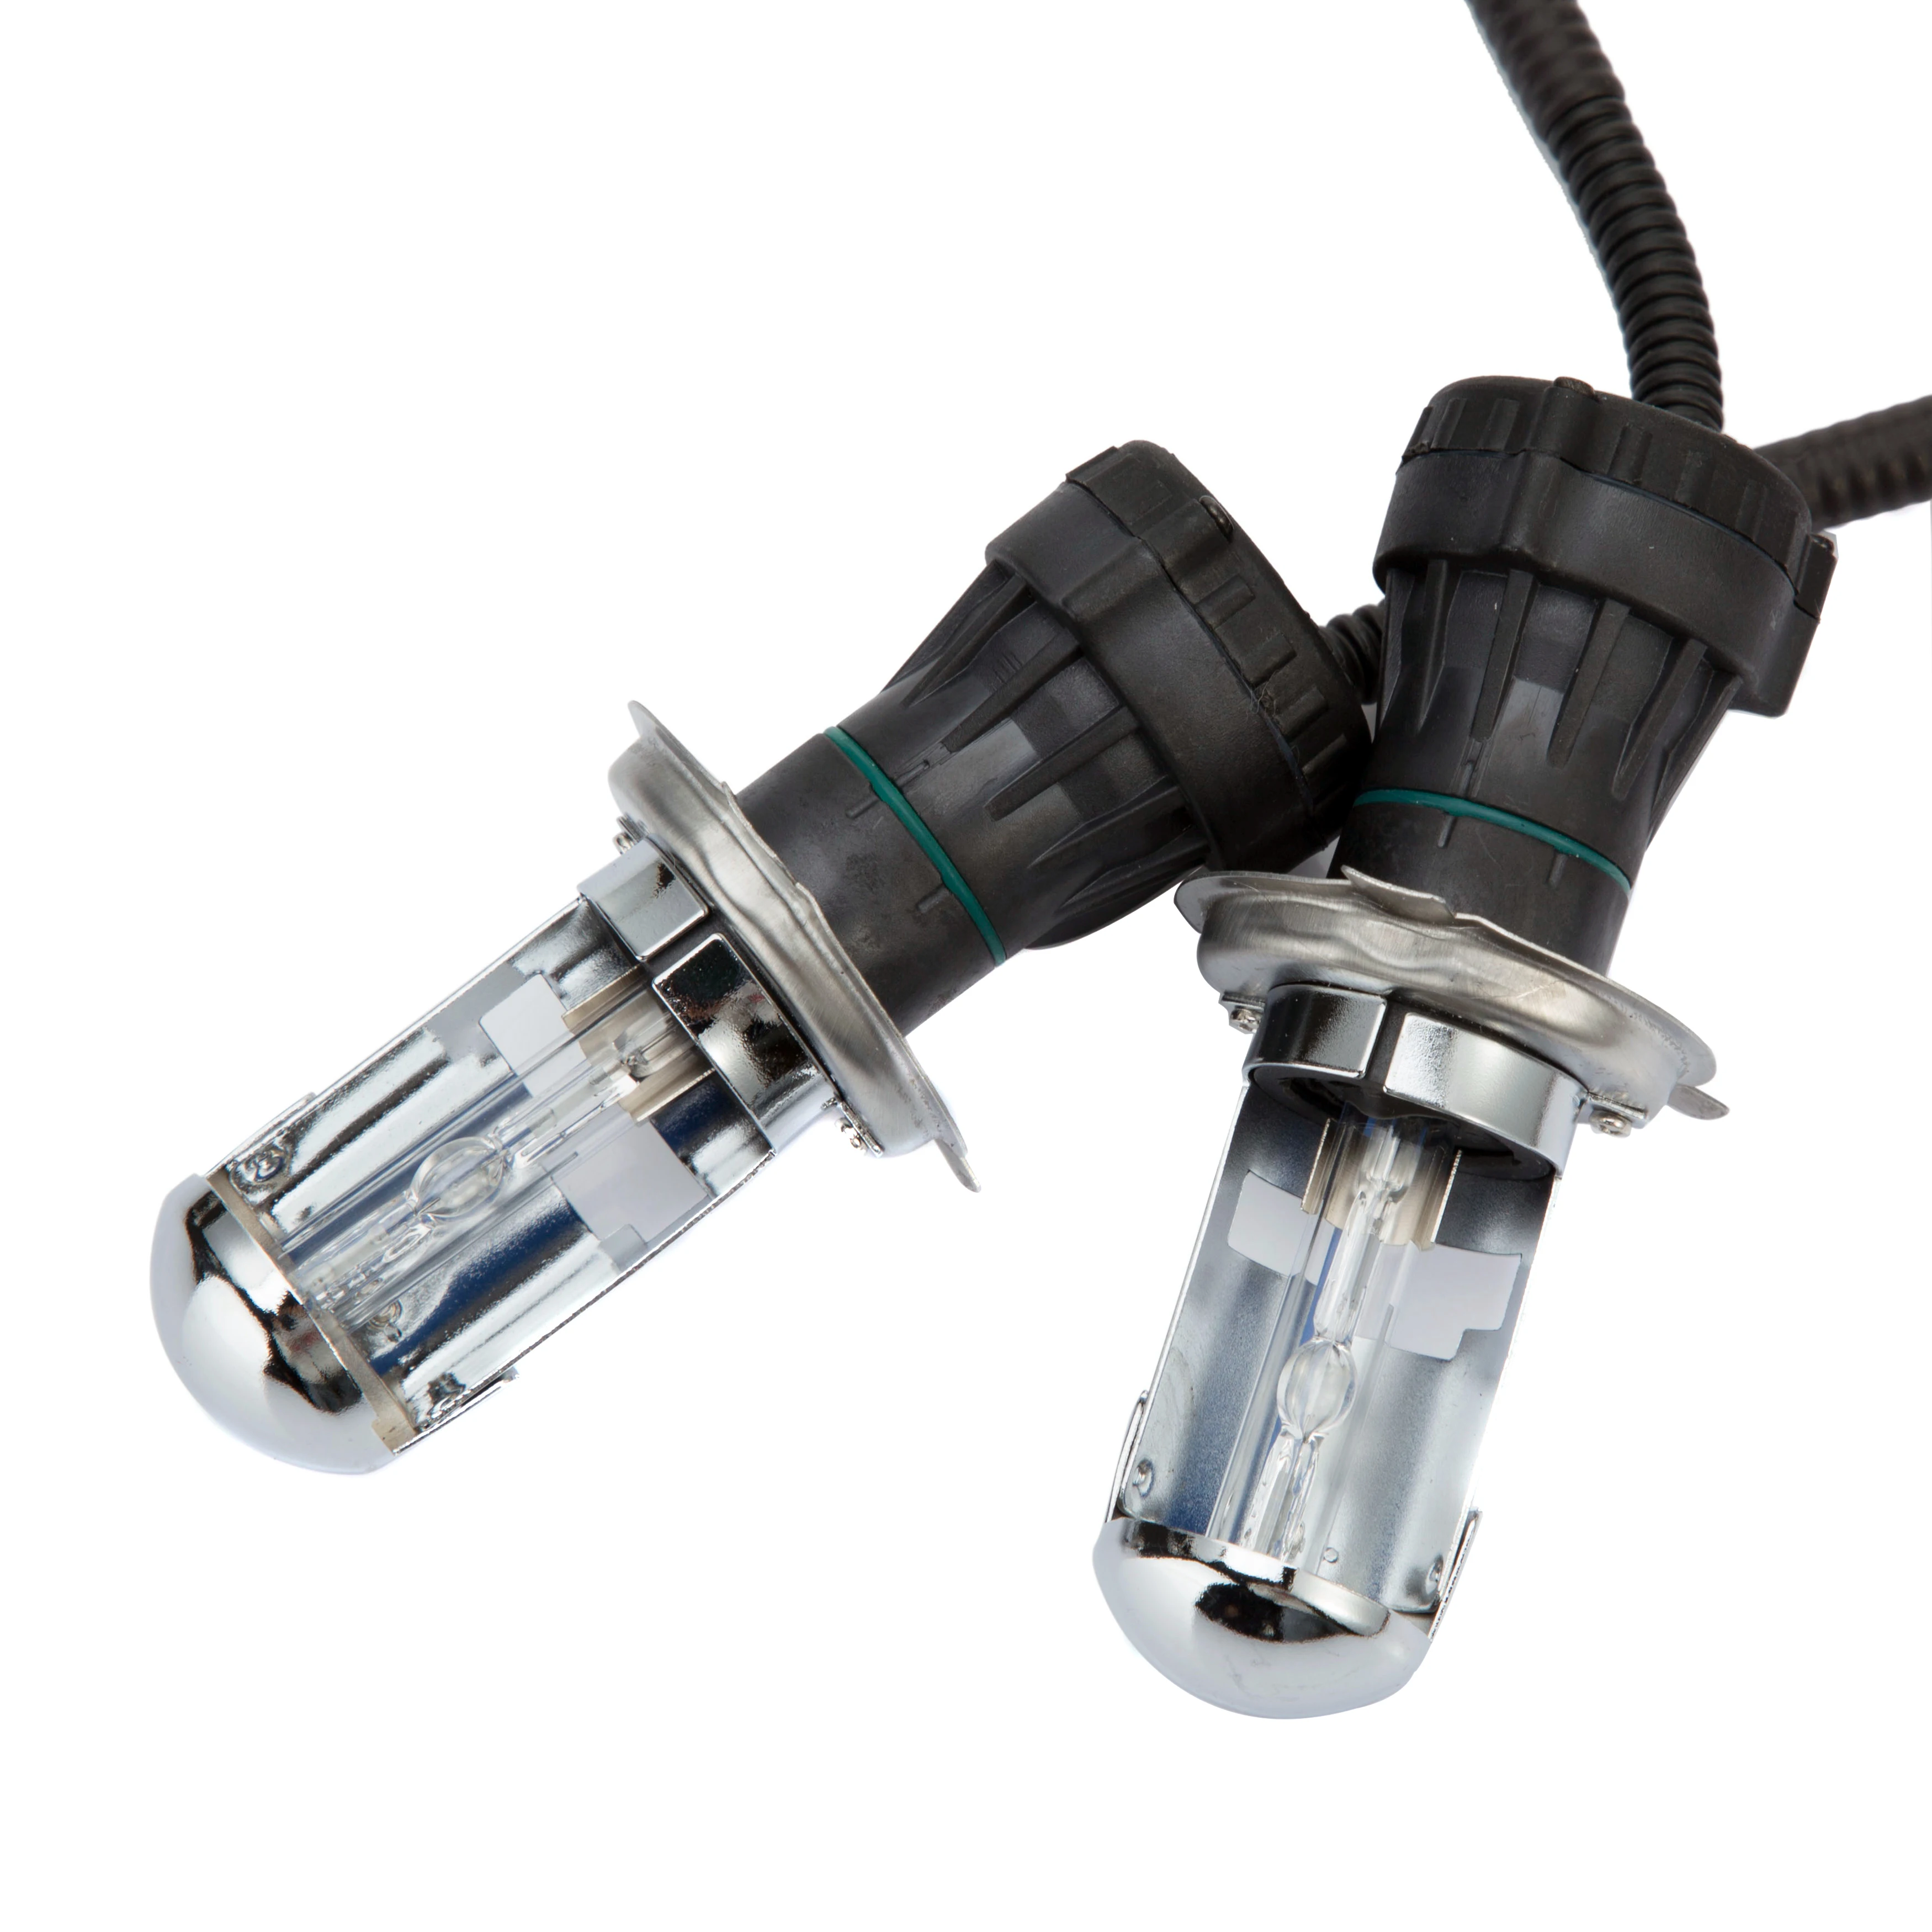 

12V 55W H7 Xenon HID Conversion Kit Bulbs For Car Headlight Lens Fog Light H4-3 H1 H11 H3 D2H 9005 9006 4300K 6000K 8000K Lamps